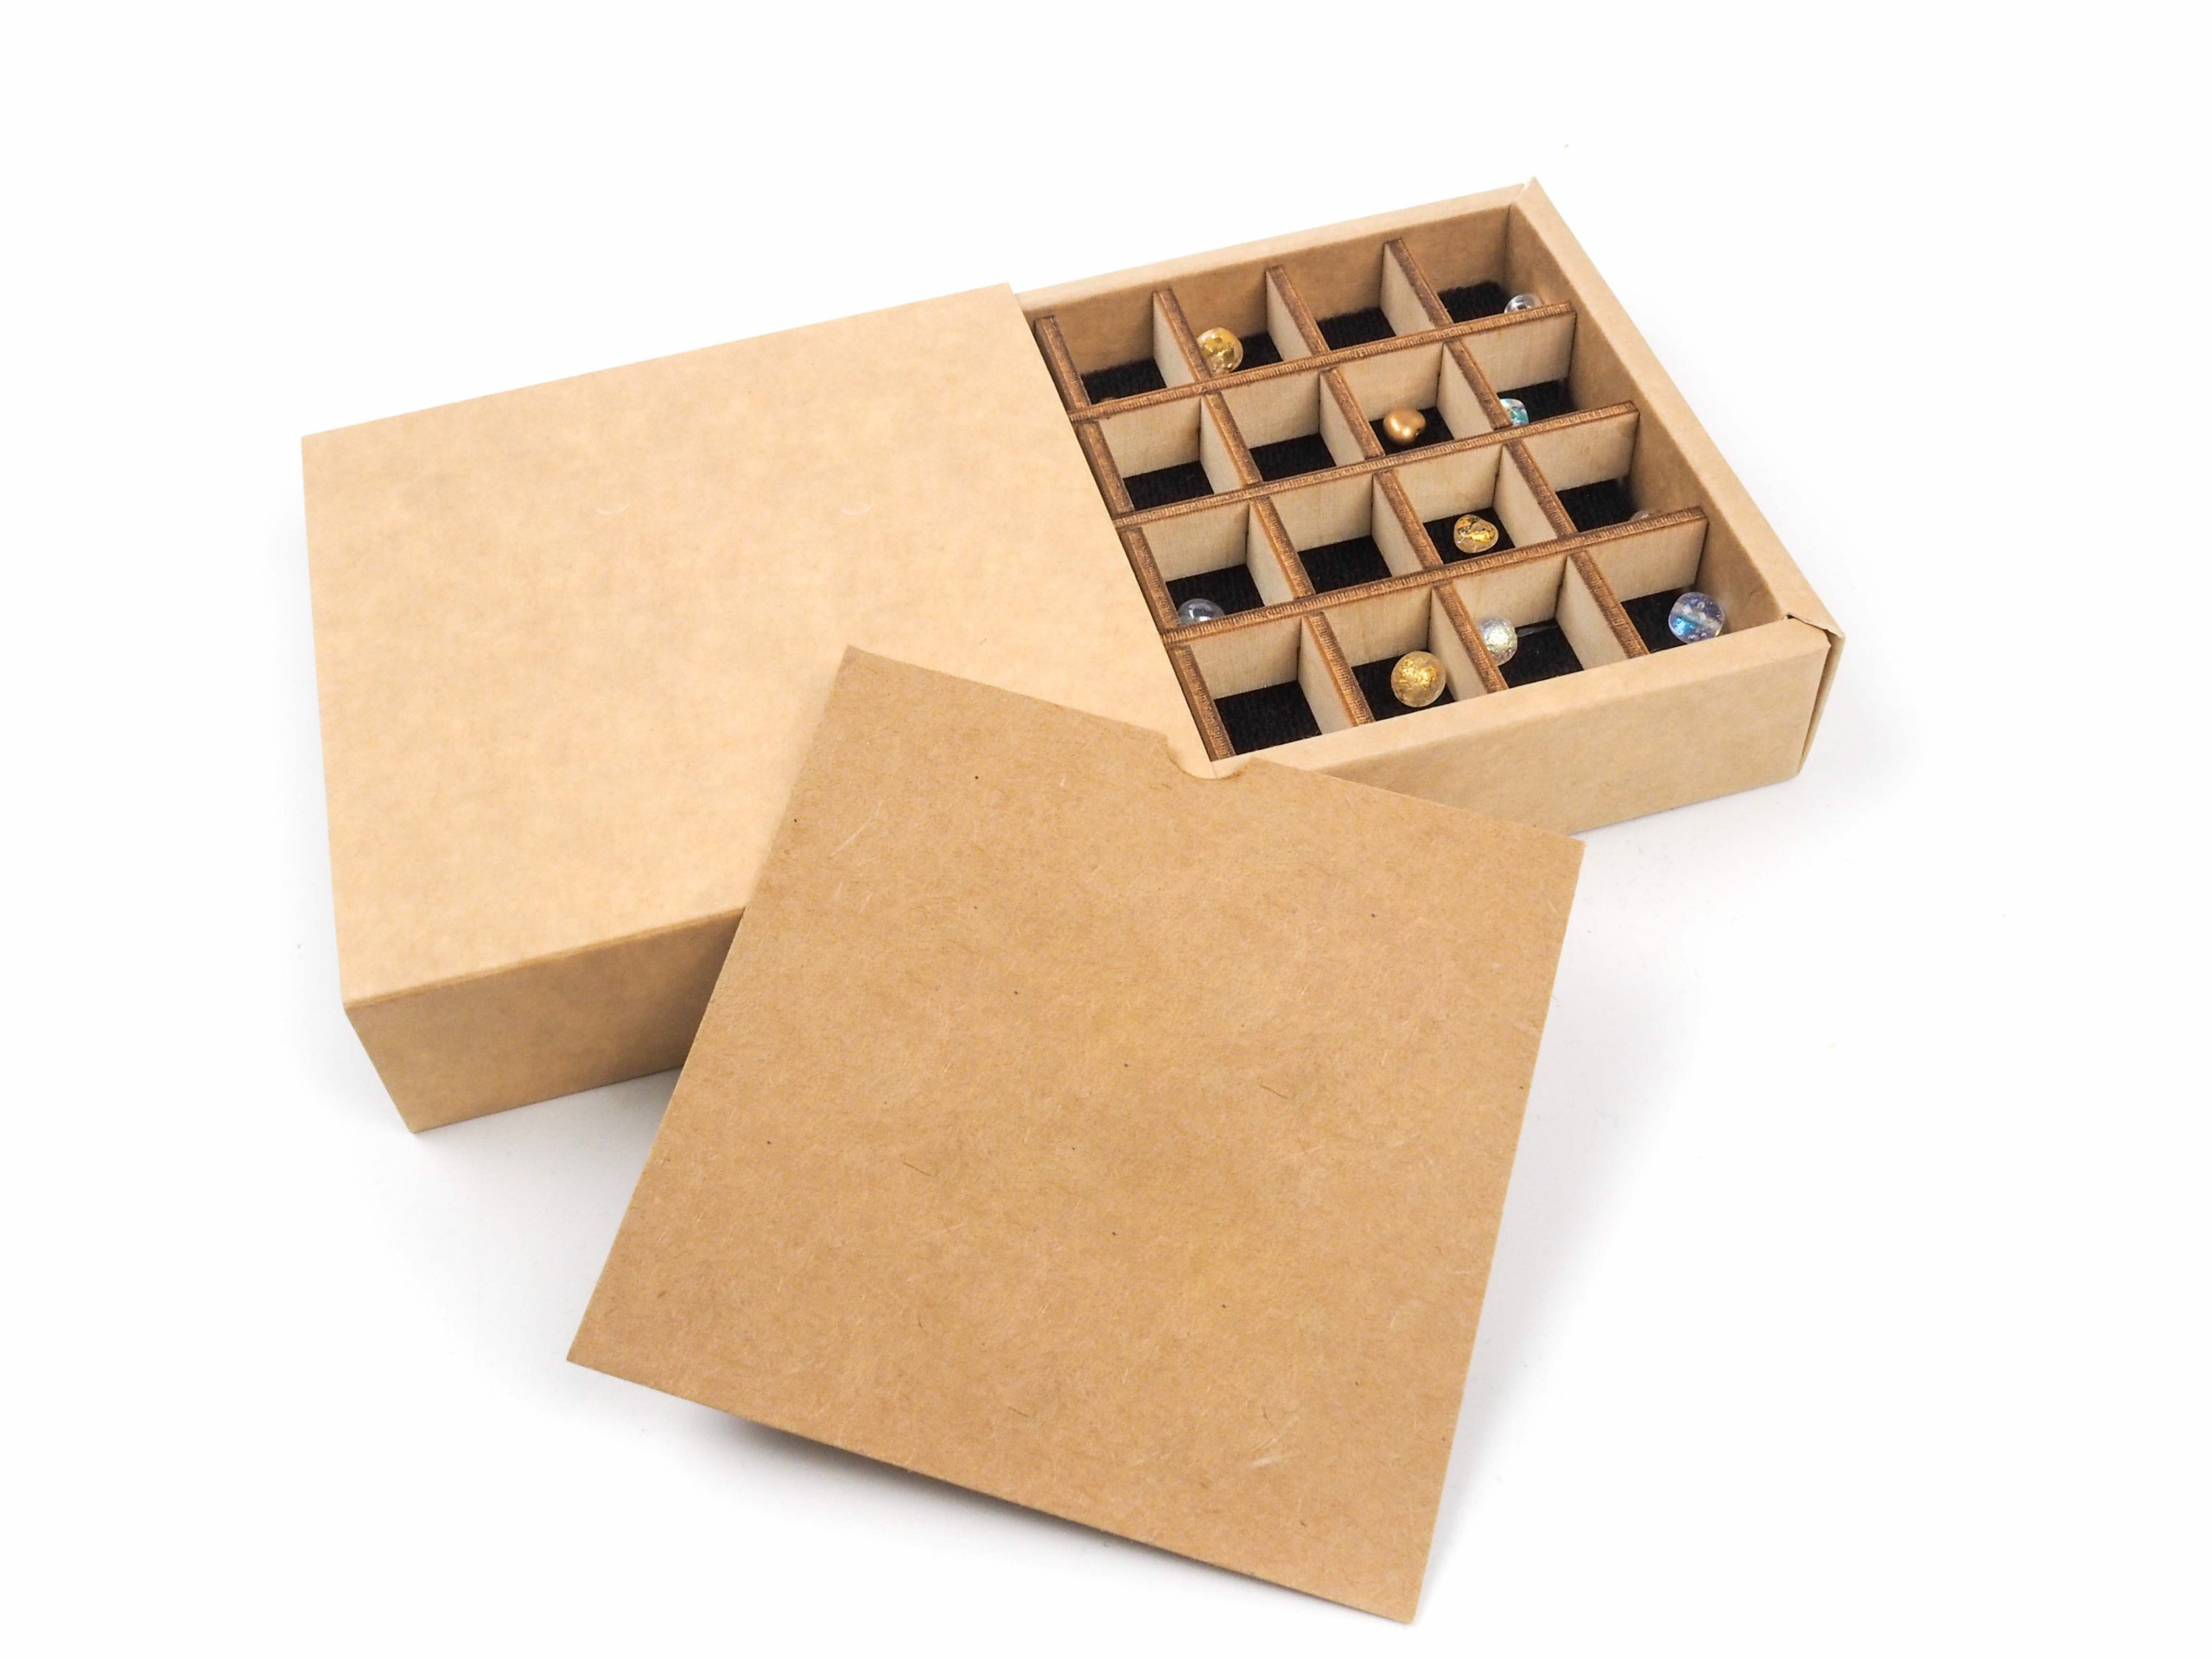 Dárková krabička byla vyrobena k sadě korálků. K jejich ochraně byla do krabičky vložena vždy dřevěná mřížková "proložka", a aby korálky hezky při otevření vynikly, byl pod ně vložek černý papír. Na korálky byl následně vložen letáček s popisem v barvě krabičky.